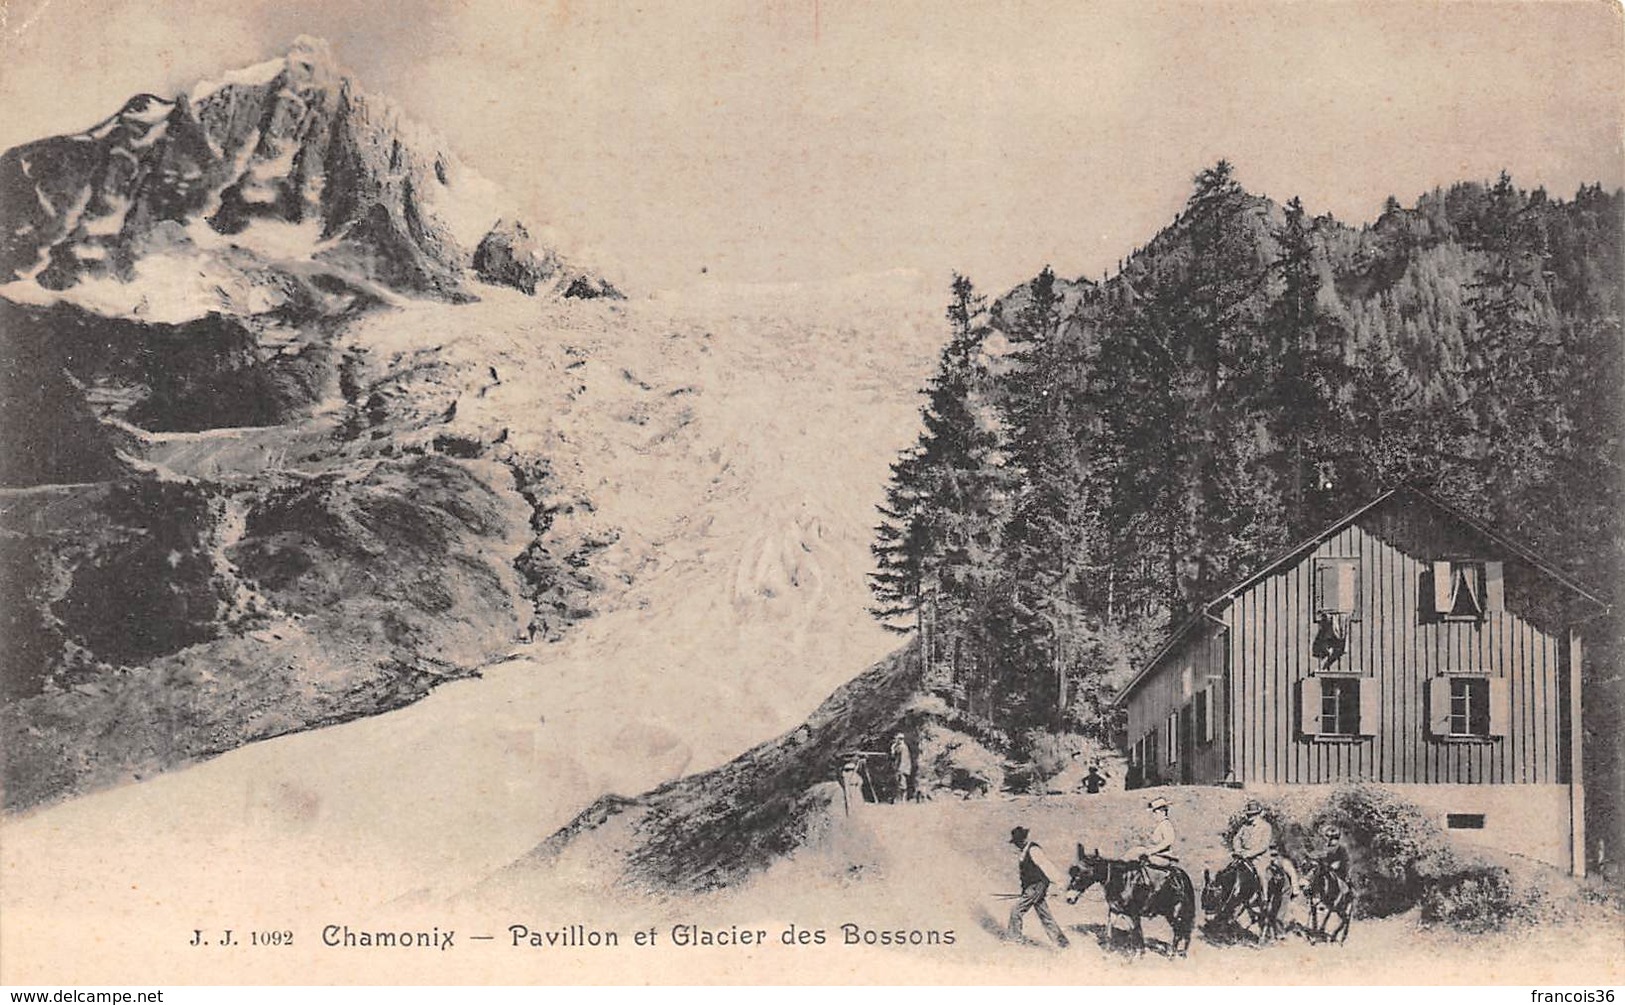 Lot de 350 cartes CPA de Chamonix - Mont Blanc - Alpinisme (74) - Très bon état général